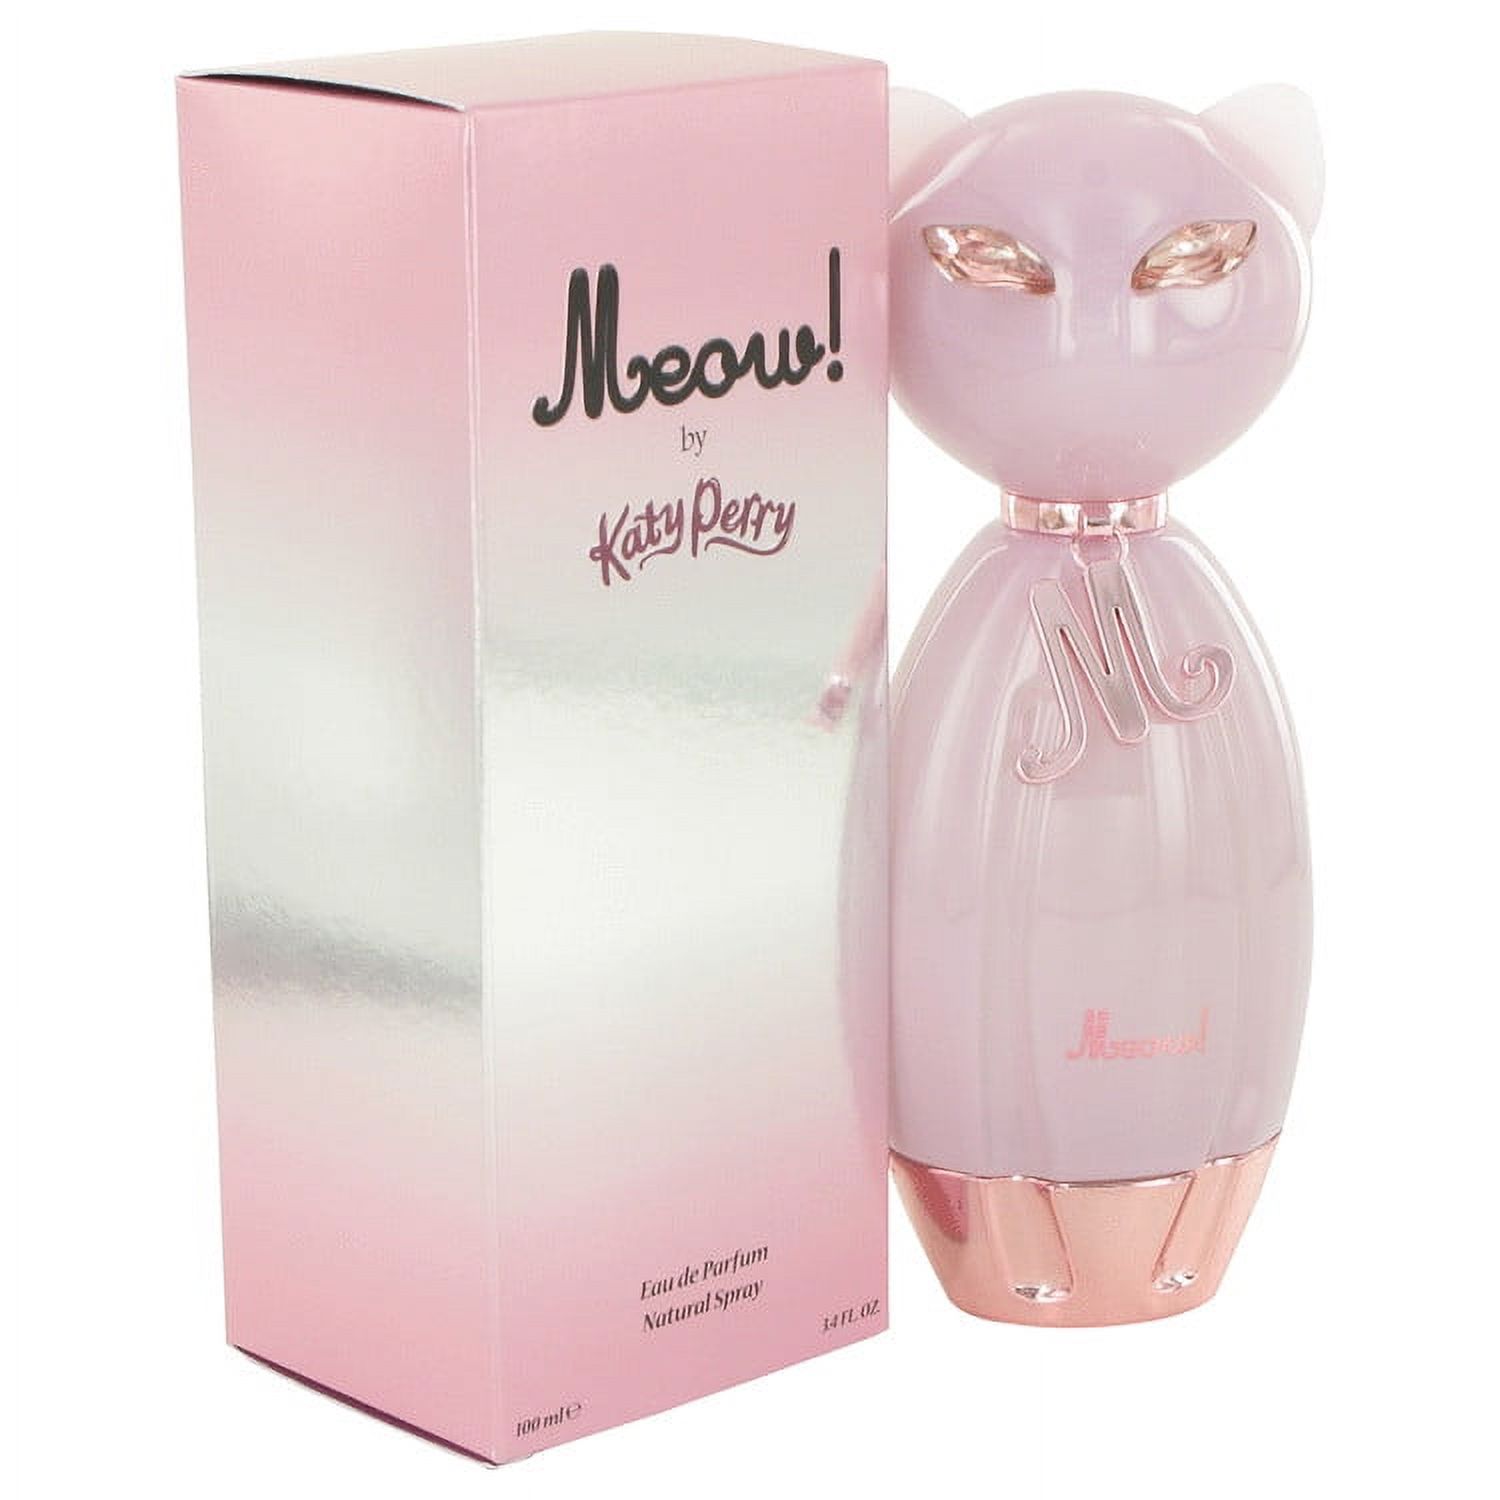 Katy Perry Meow Eau De Parfum Spray for Women 3.4 oz - image 4 of 4